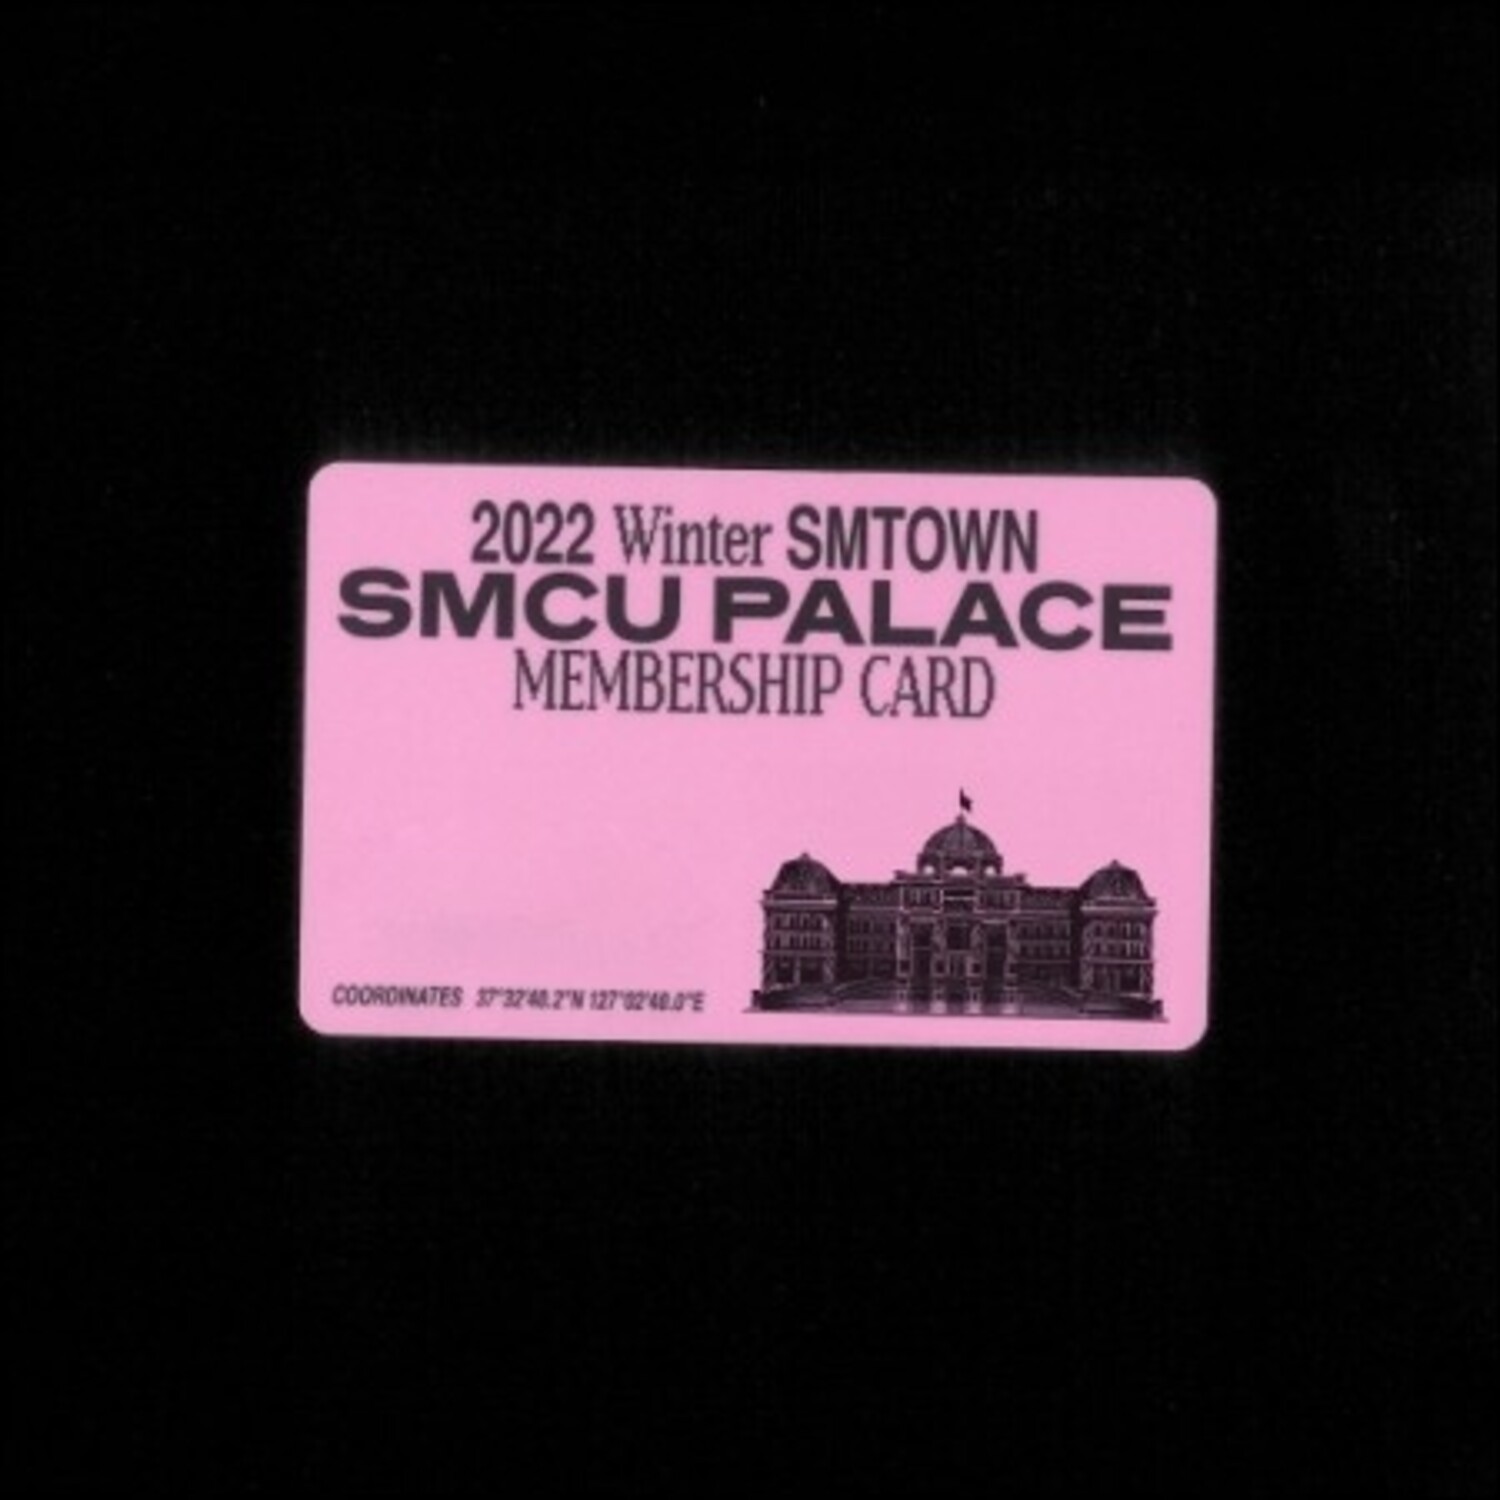 디제이 긴조, 레이든, 임레이, 마비스타(DJ) - [2022 Winter SMTOWN : SMCU PALACE] (GUEST. DJ (GINJO, RAIDEN, IMLAY, MAR VISTA)) (Membership Card Ver.) (스마트앨범)